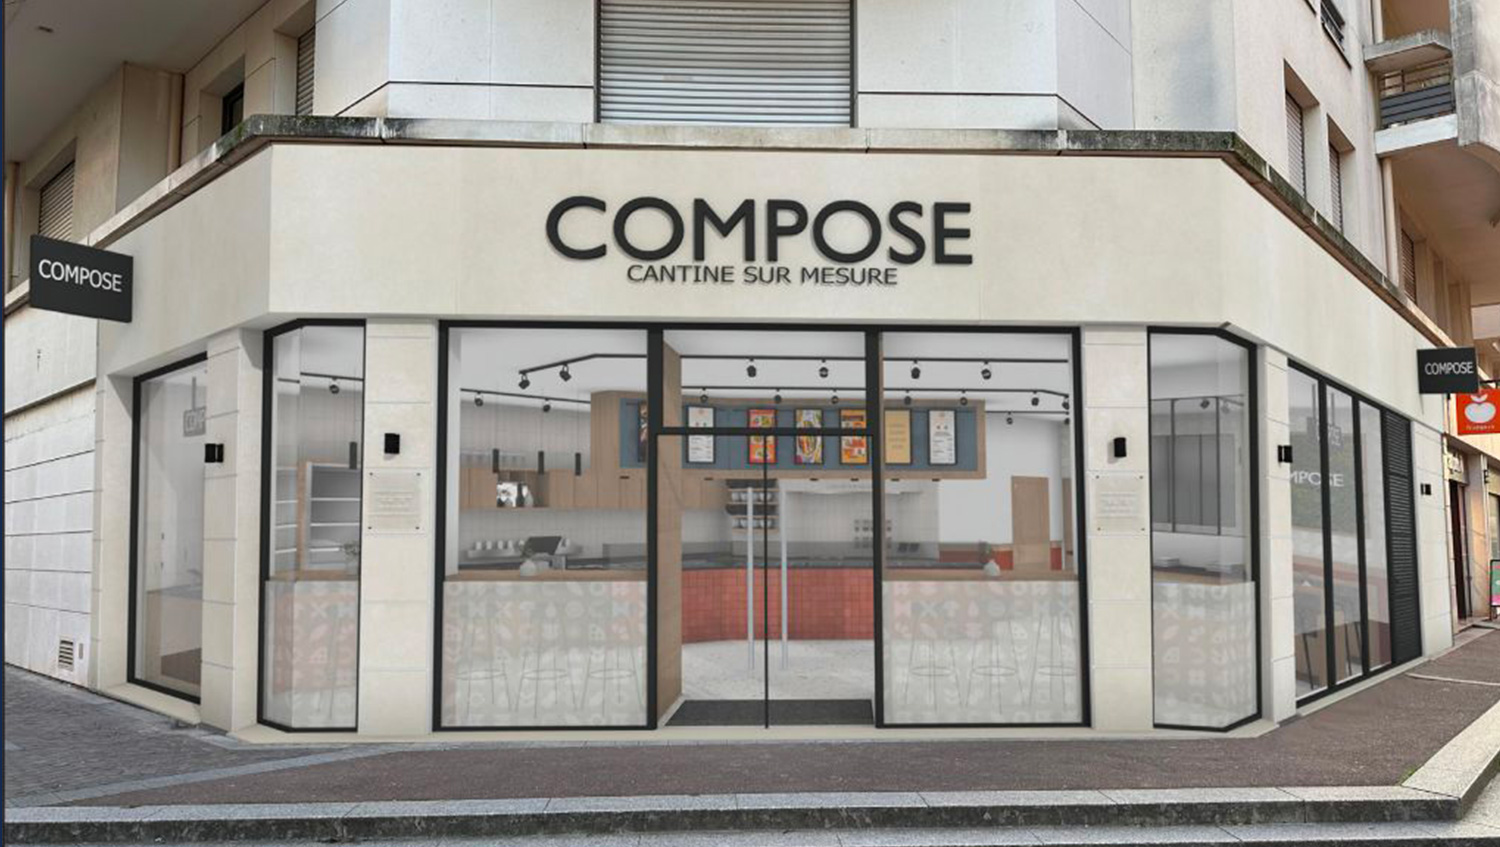 Le Groupe Colombus est heureux d'annoncer la signature d'un bail commercial long terme avec le groupe COMPOSE - Cantine sur mesure, référence française de la #restauration rapide et équilibrée.